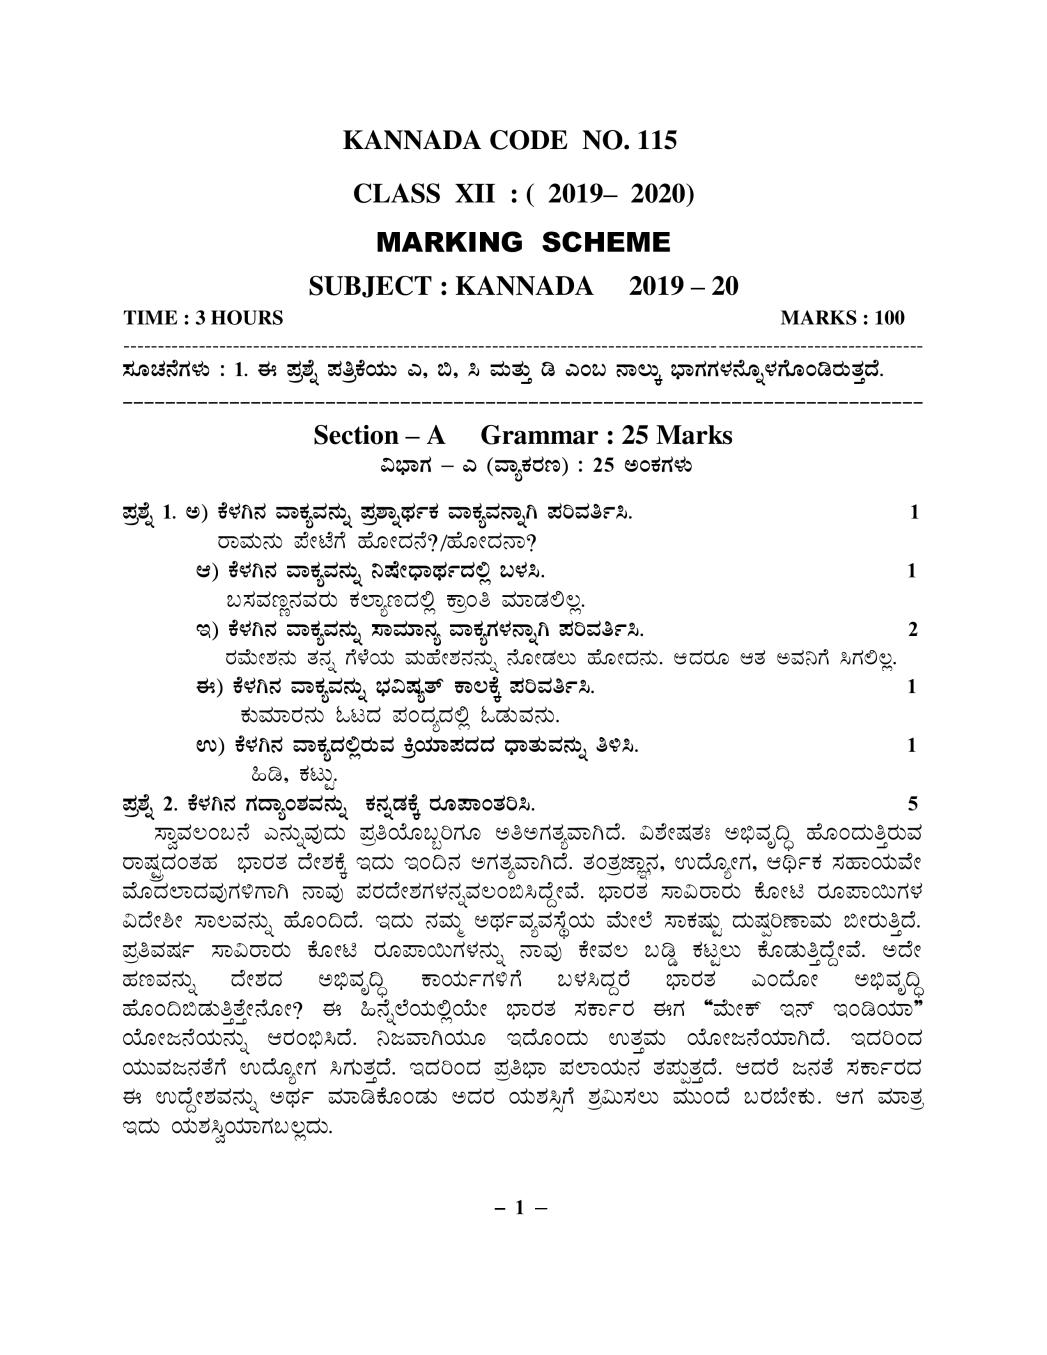 CBSE Class 12 Marking Scheme 2020 for Kannada - Page 1